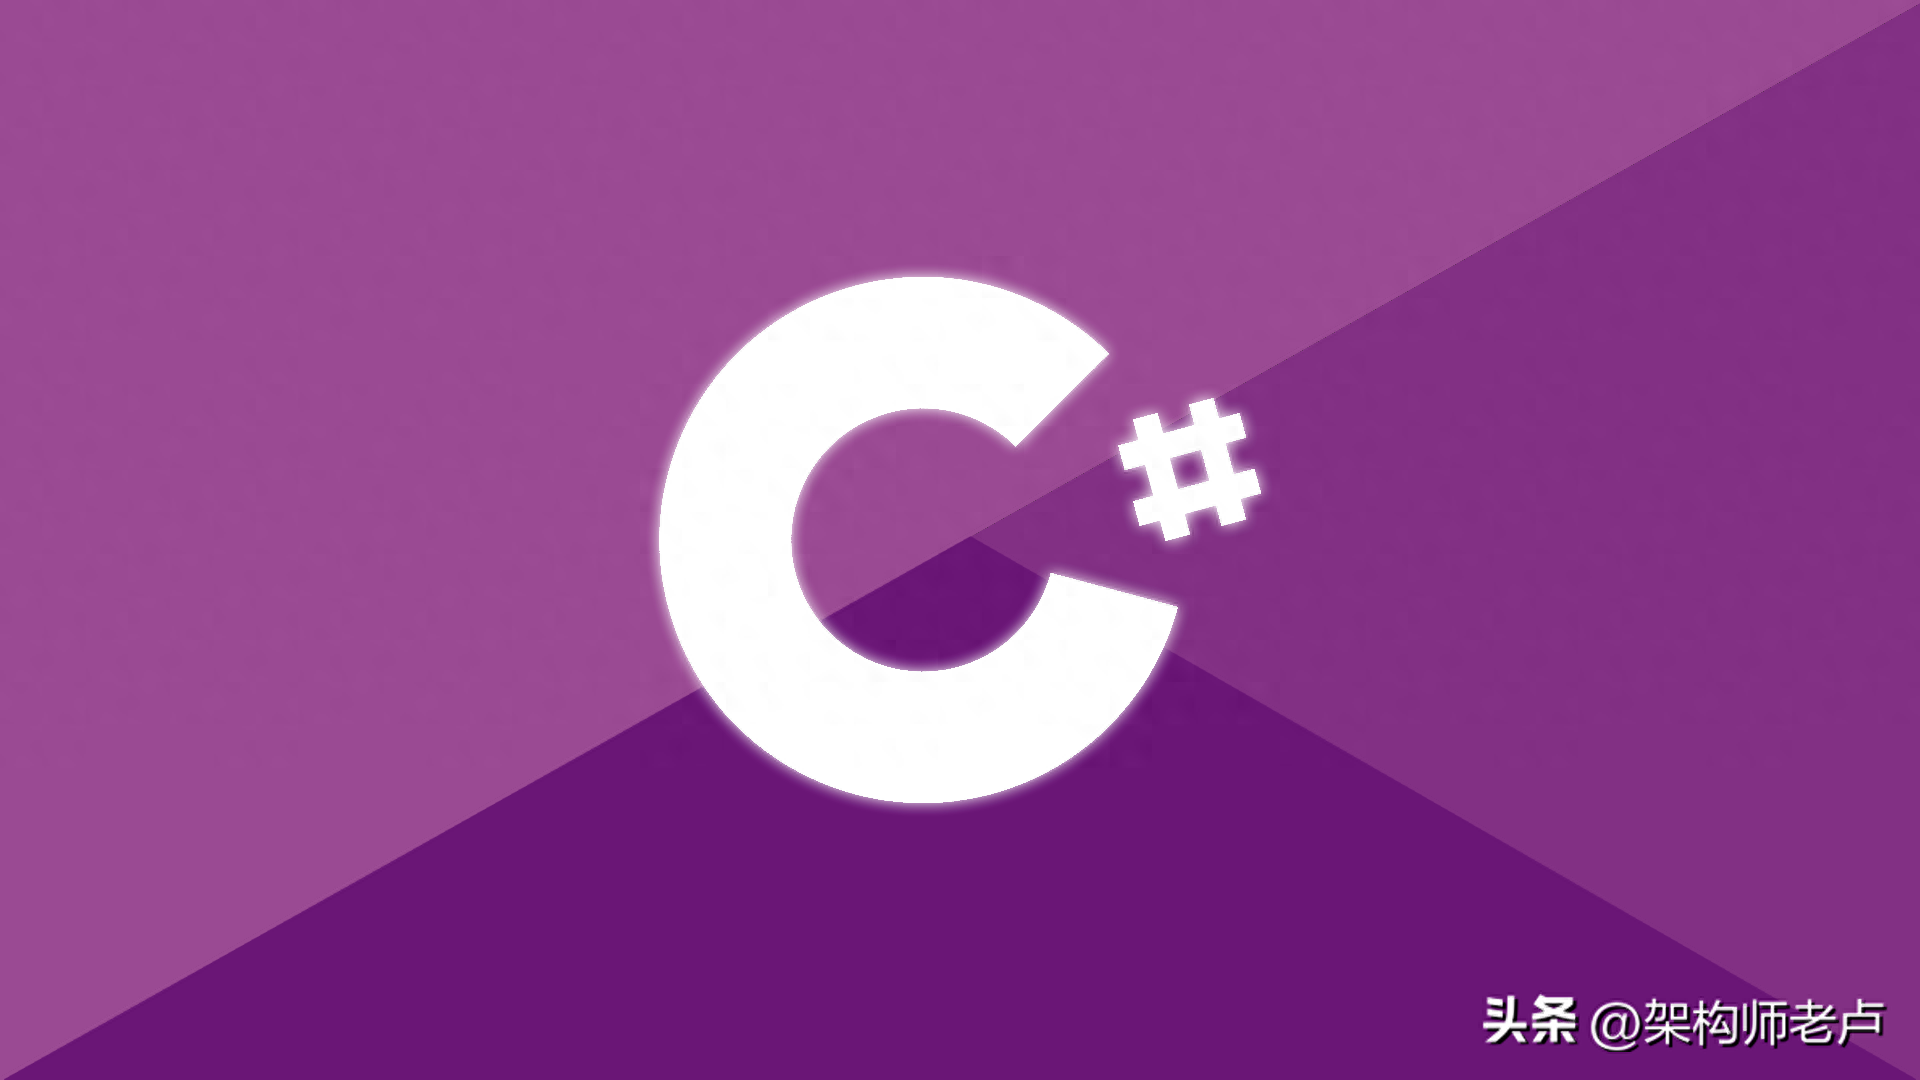 C#自增运算符详解：++i与i++的区别及应用场景